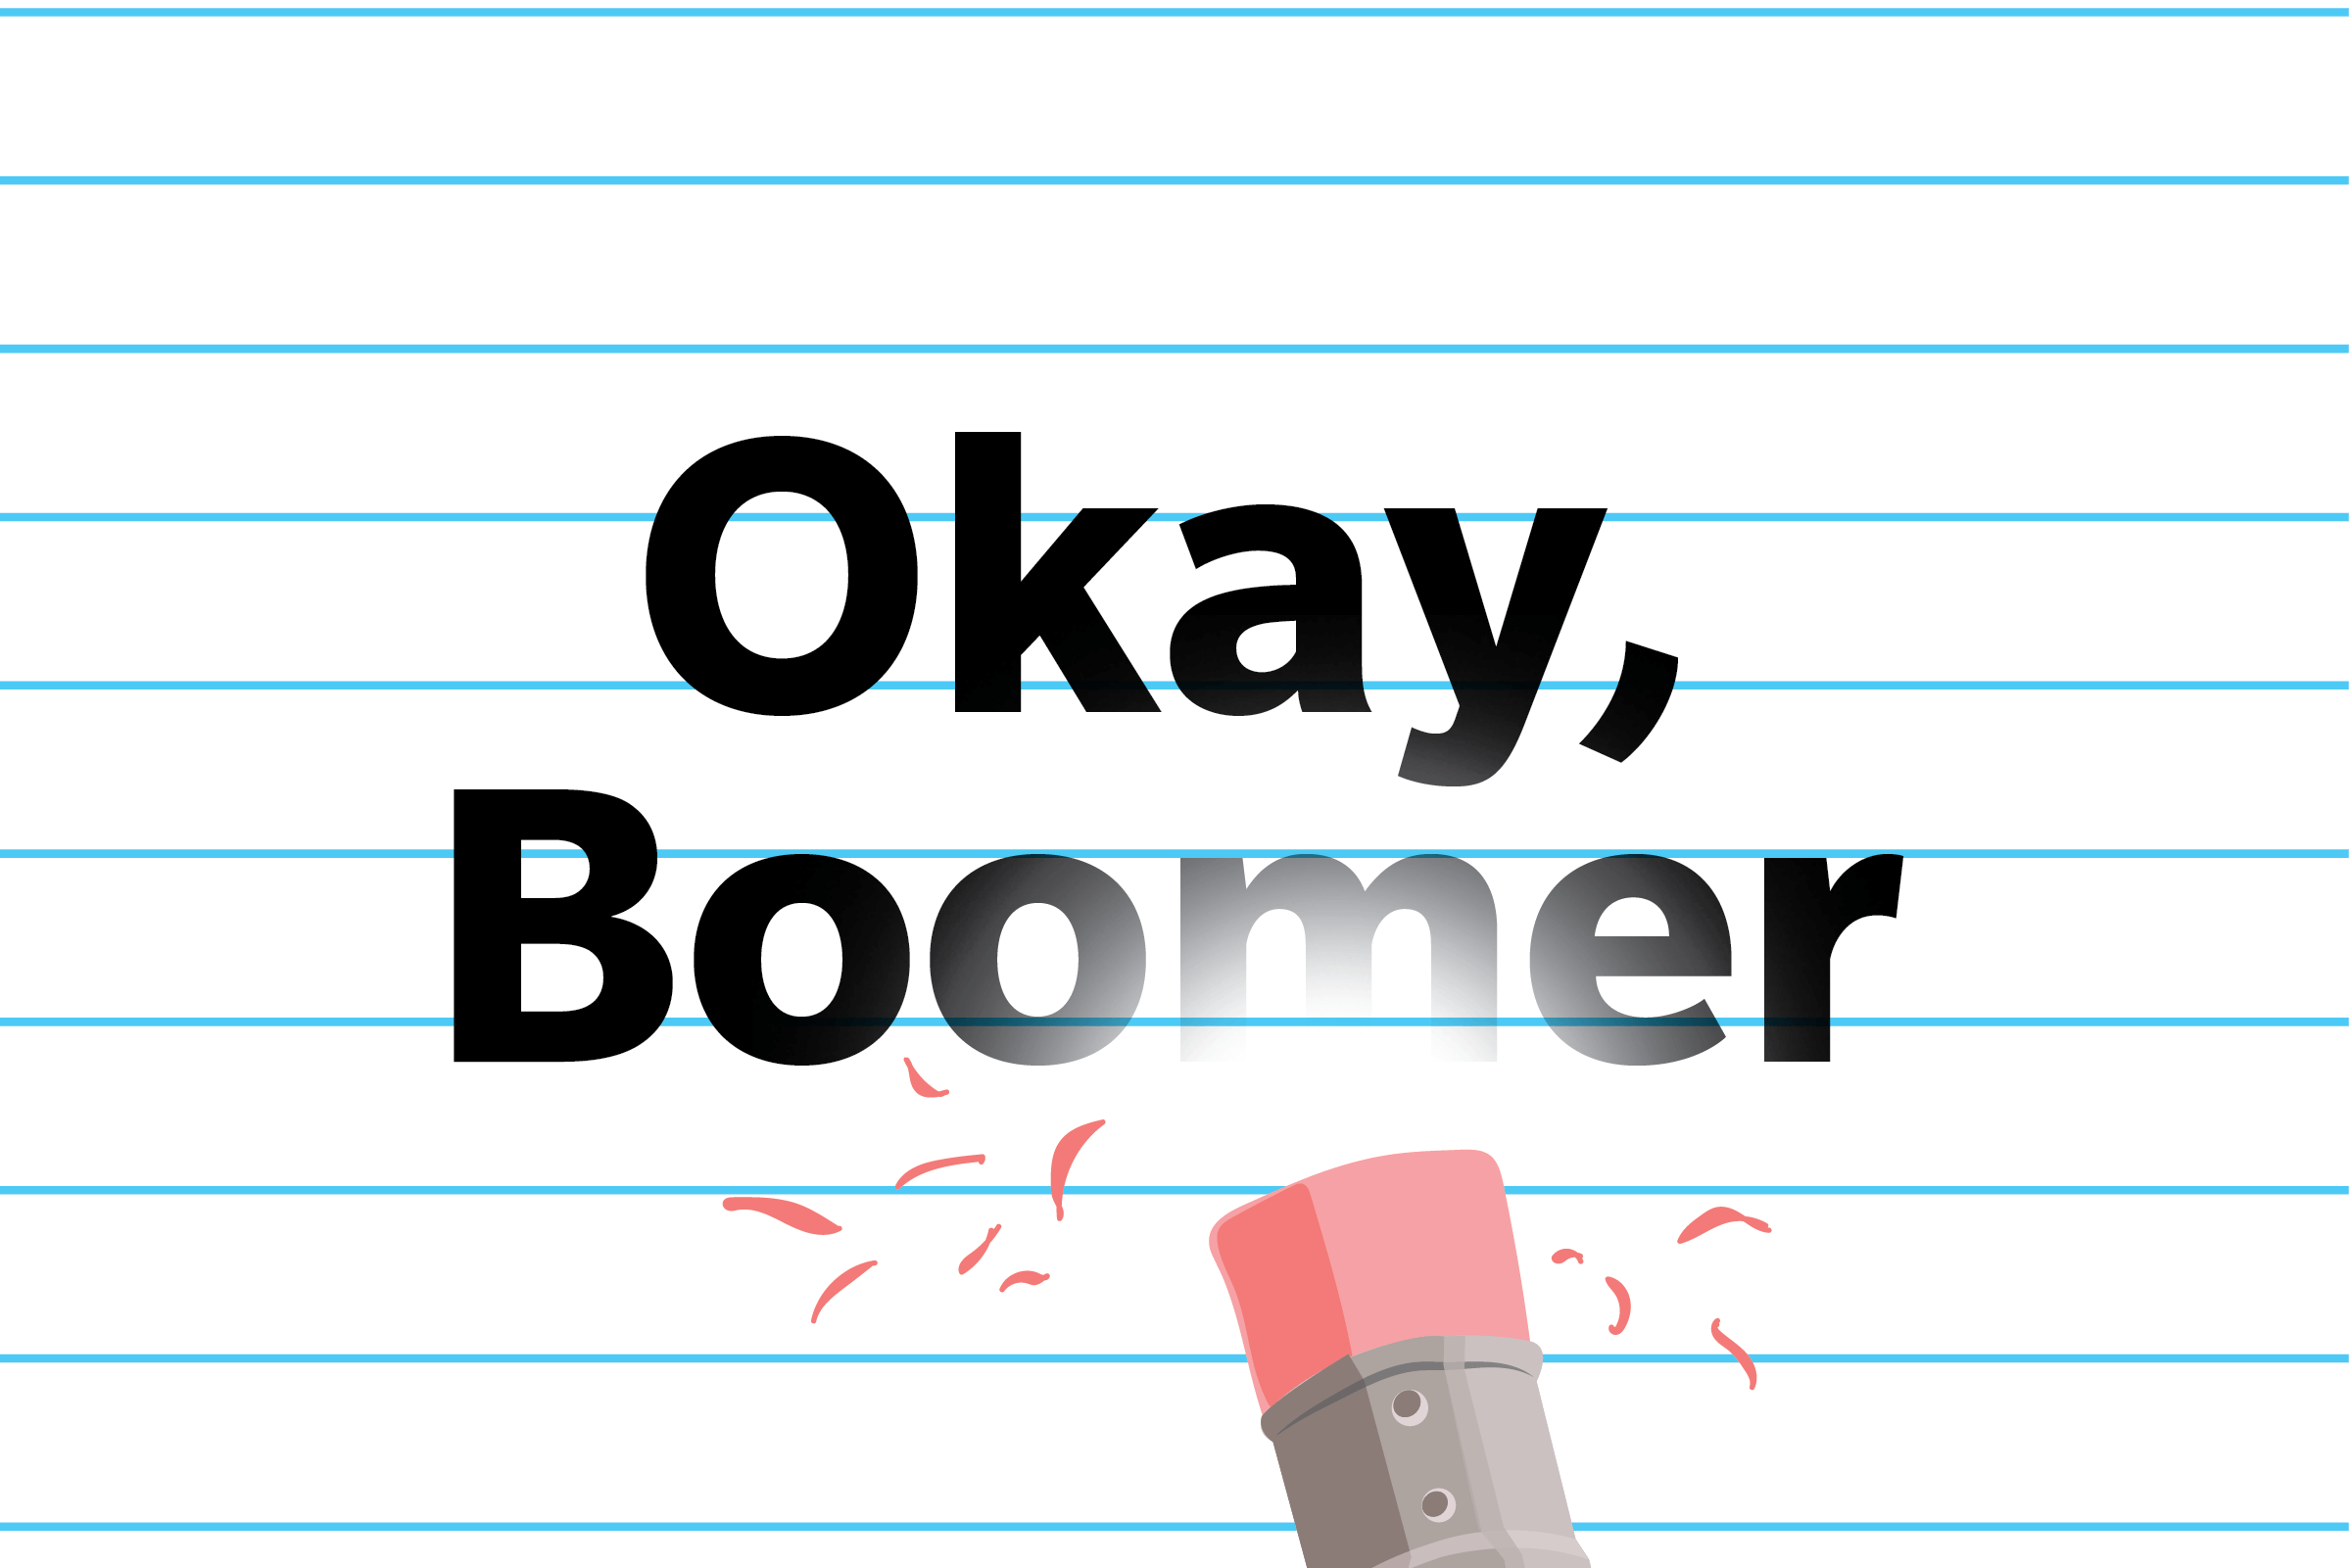 Okay, boomer